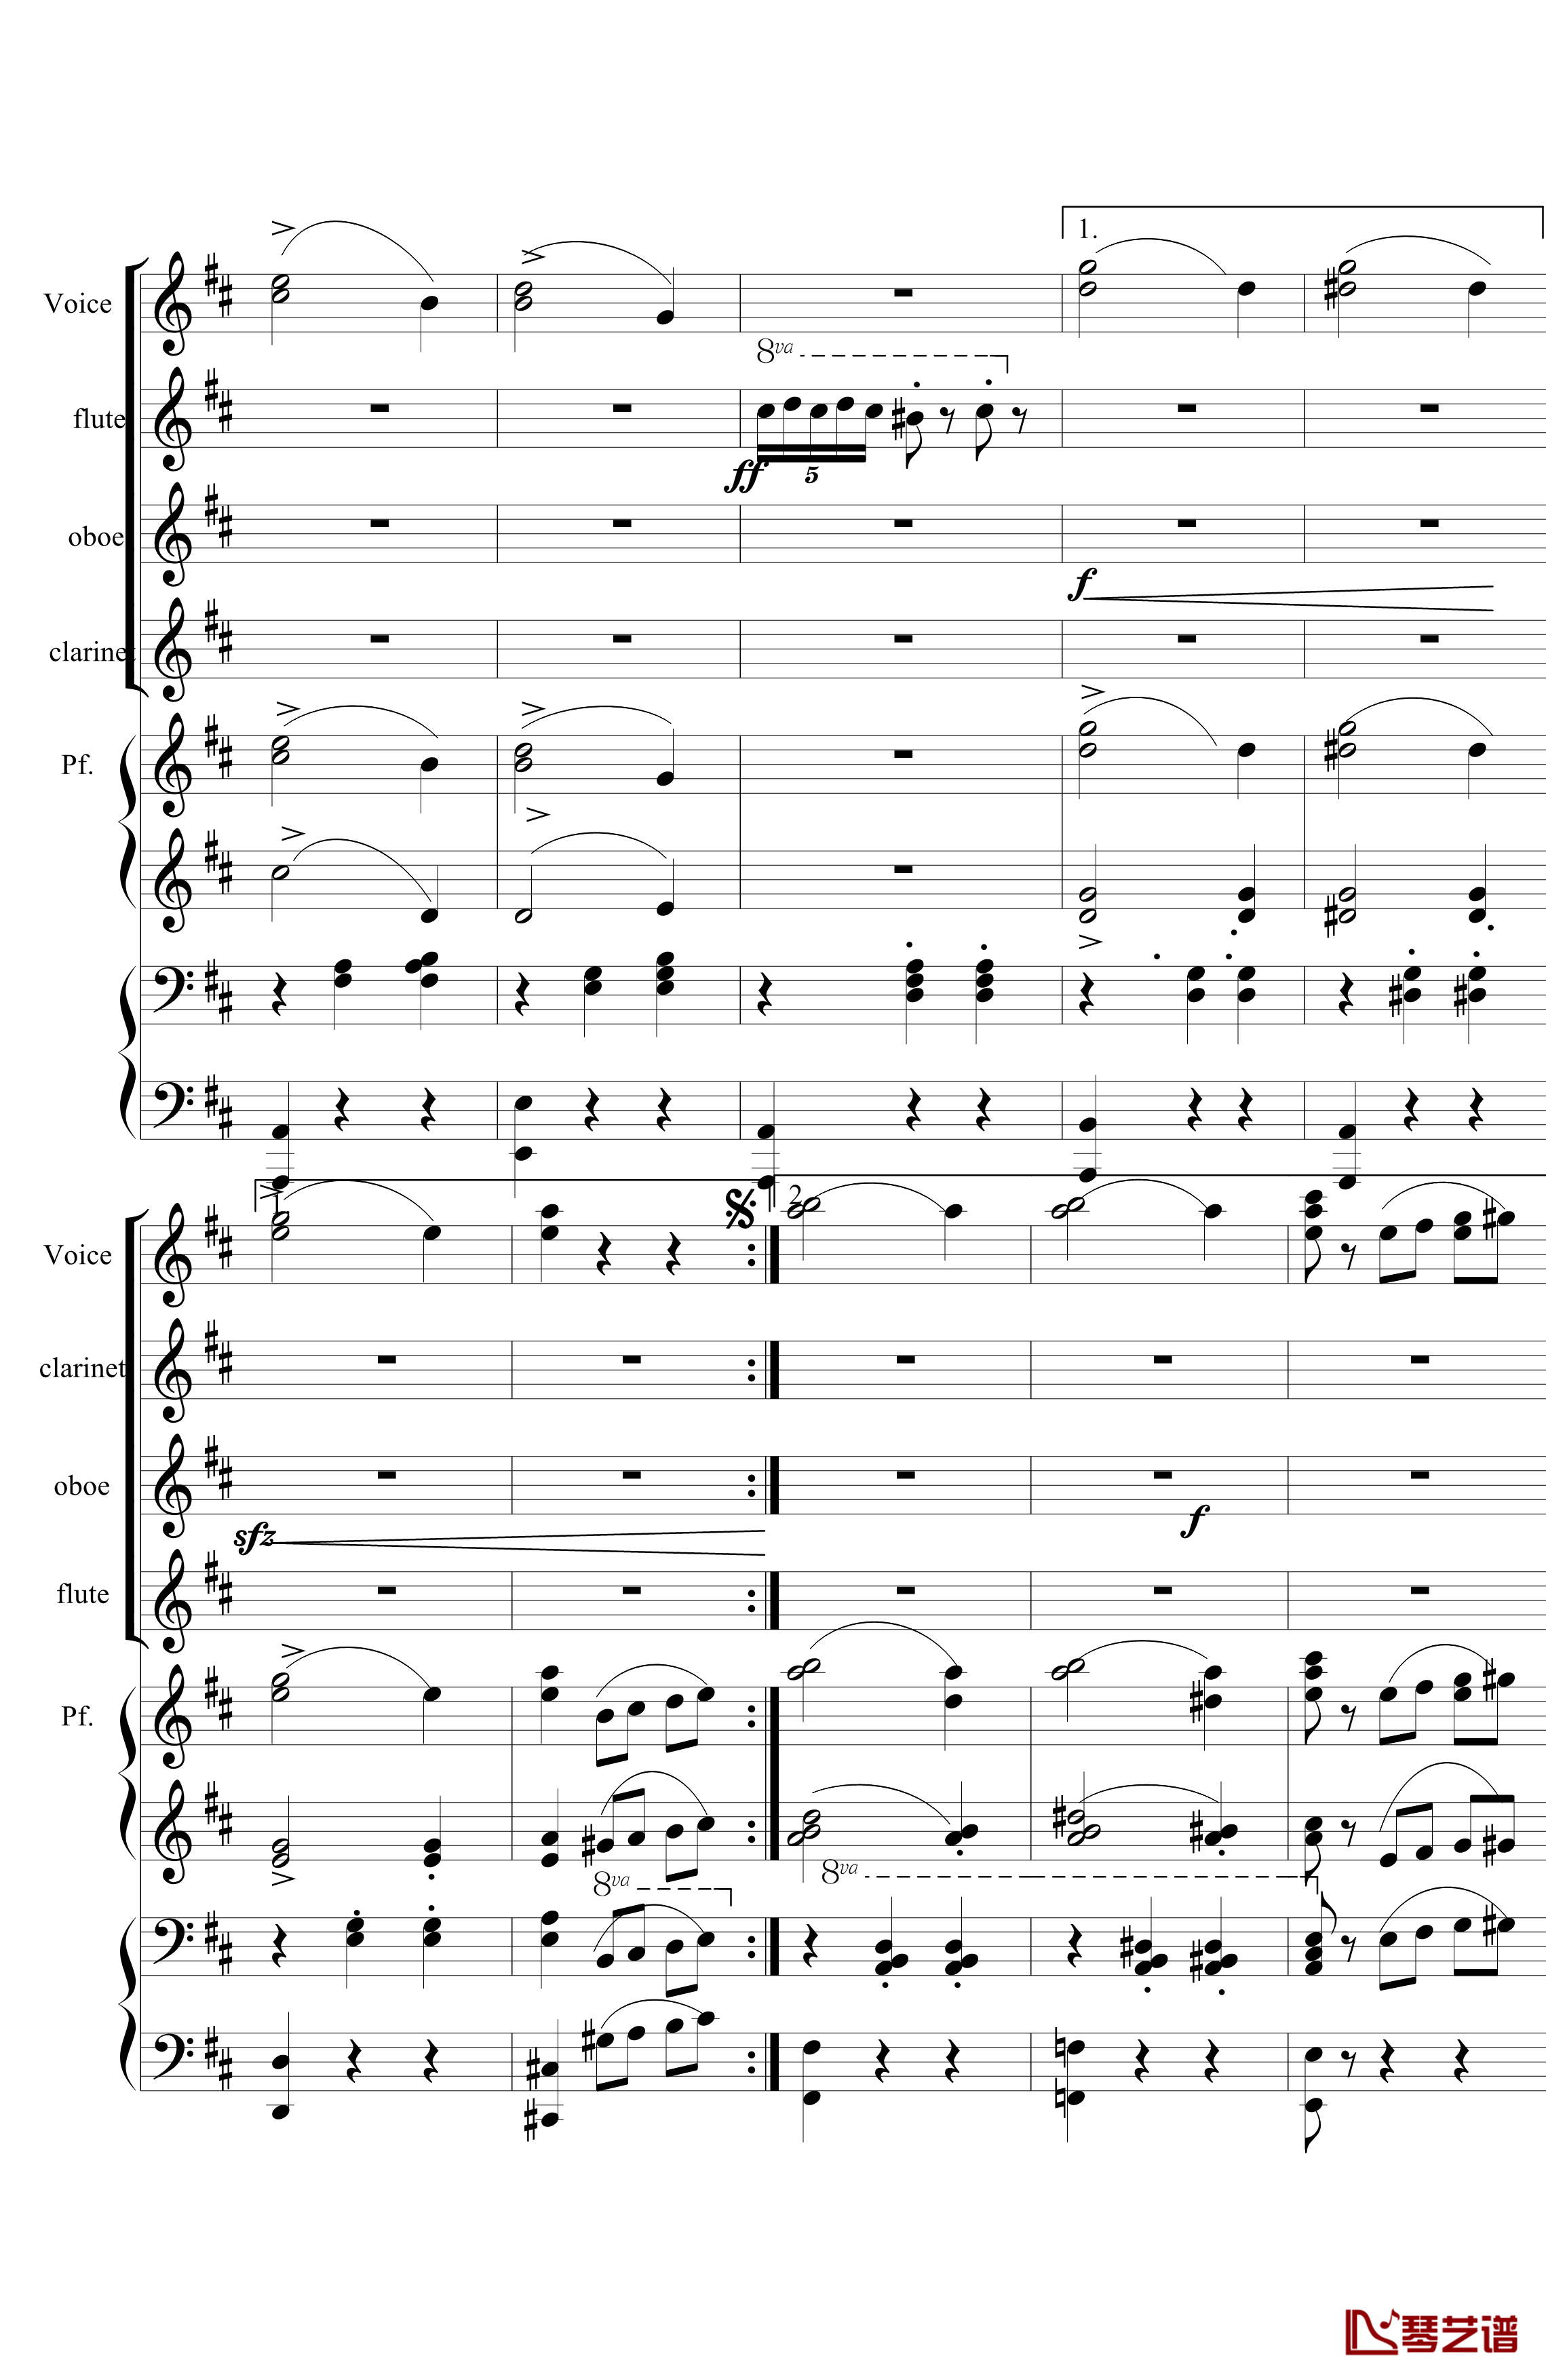 花之圆舞曲钢琴谱-室内乐-柴科夫斯基-Peter Ilyich Tchaikovsky6